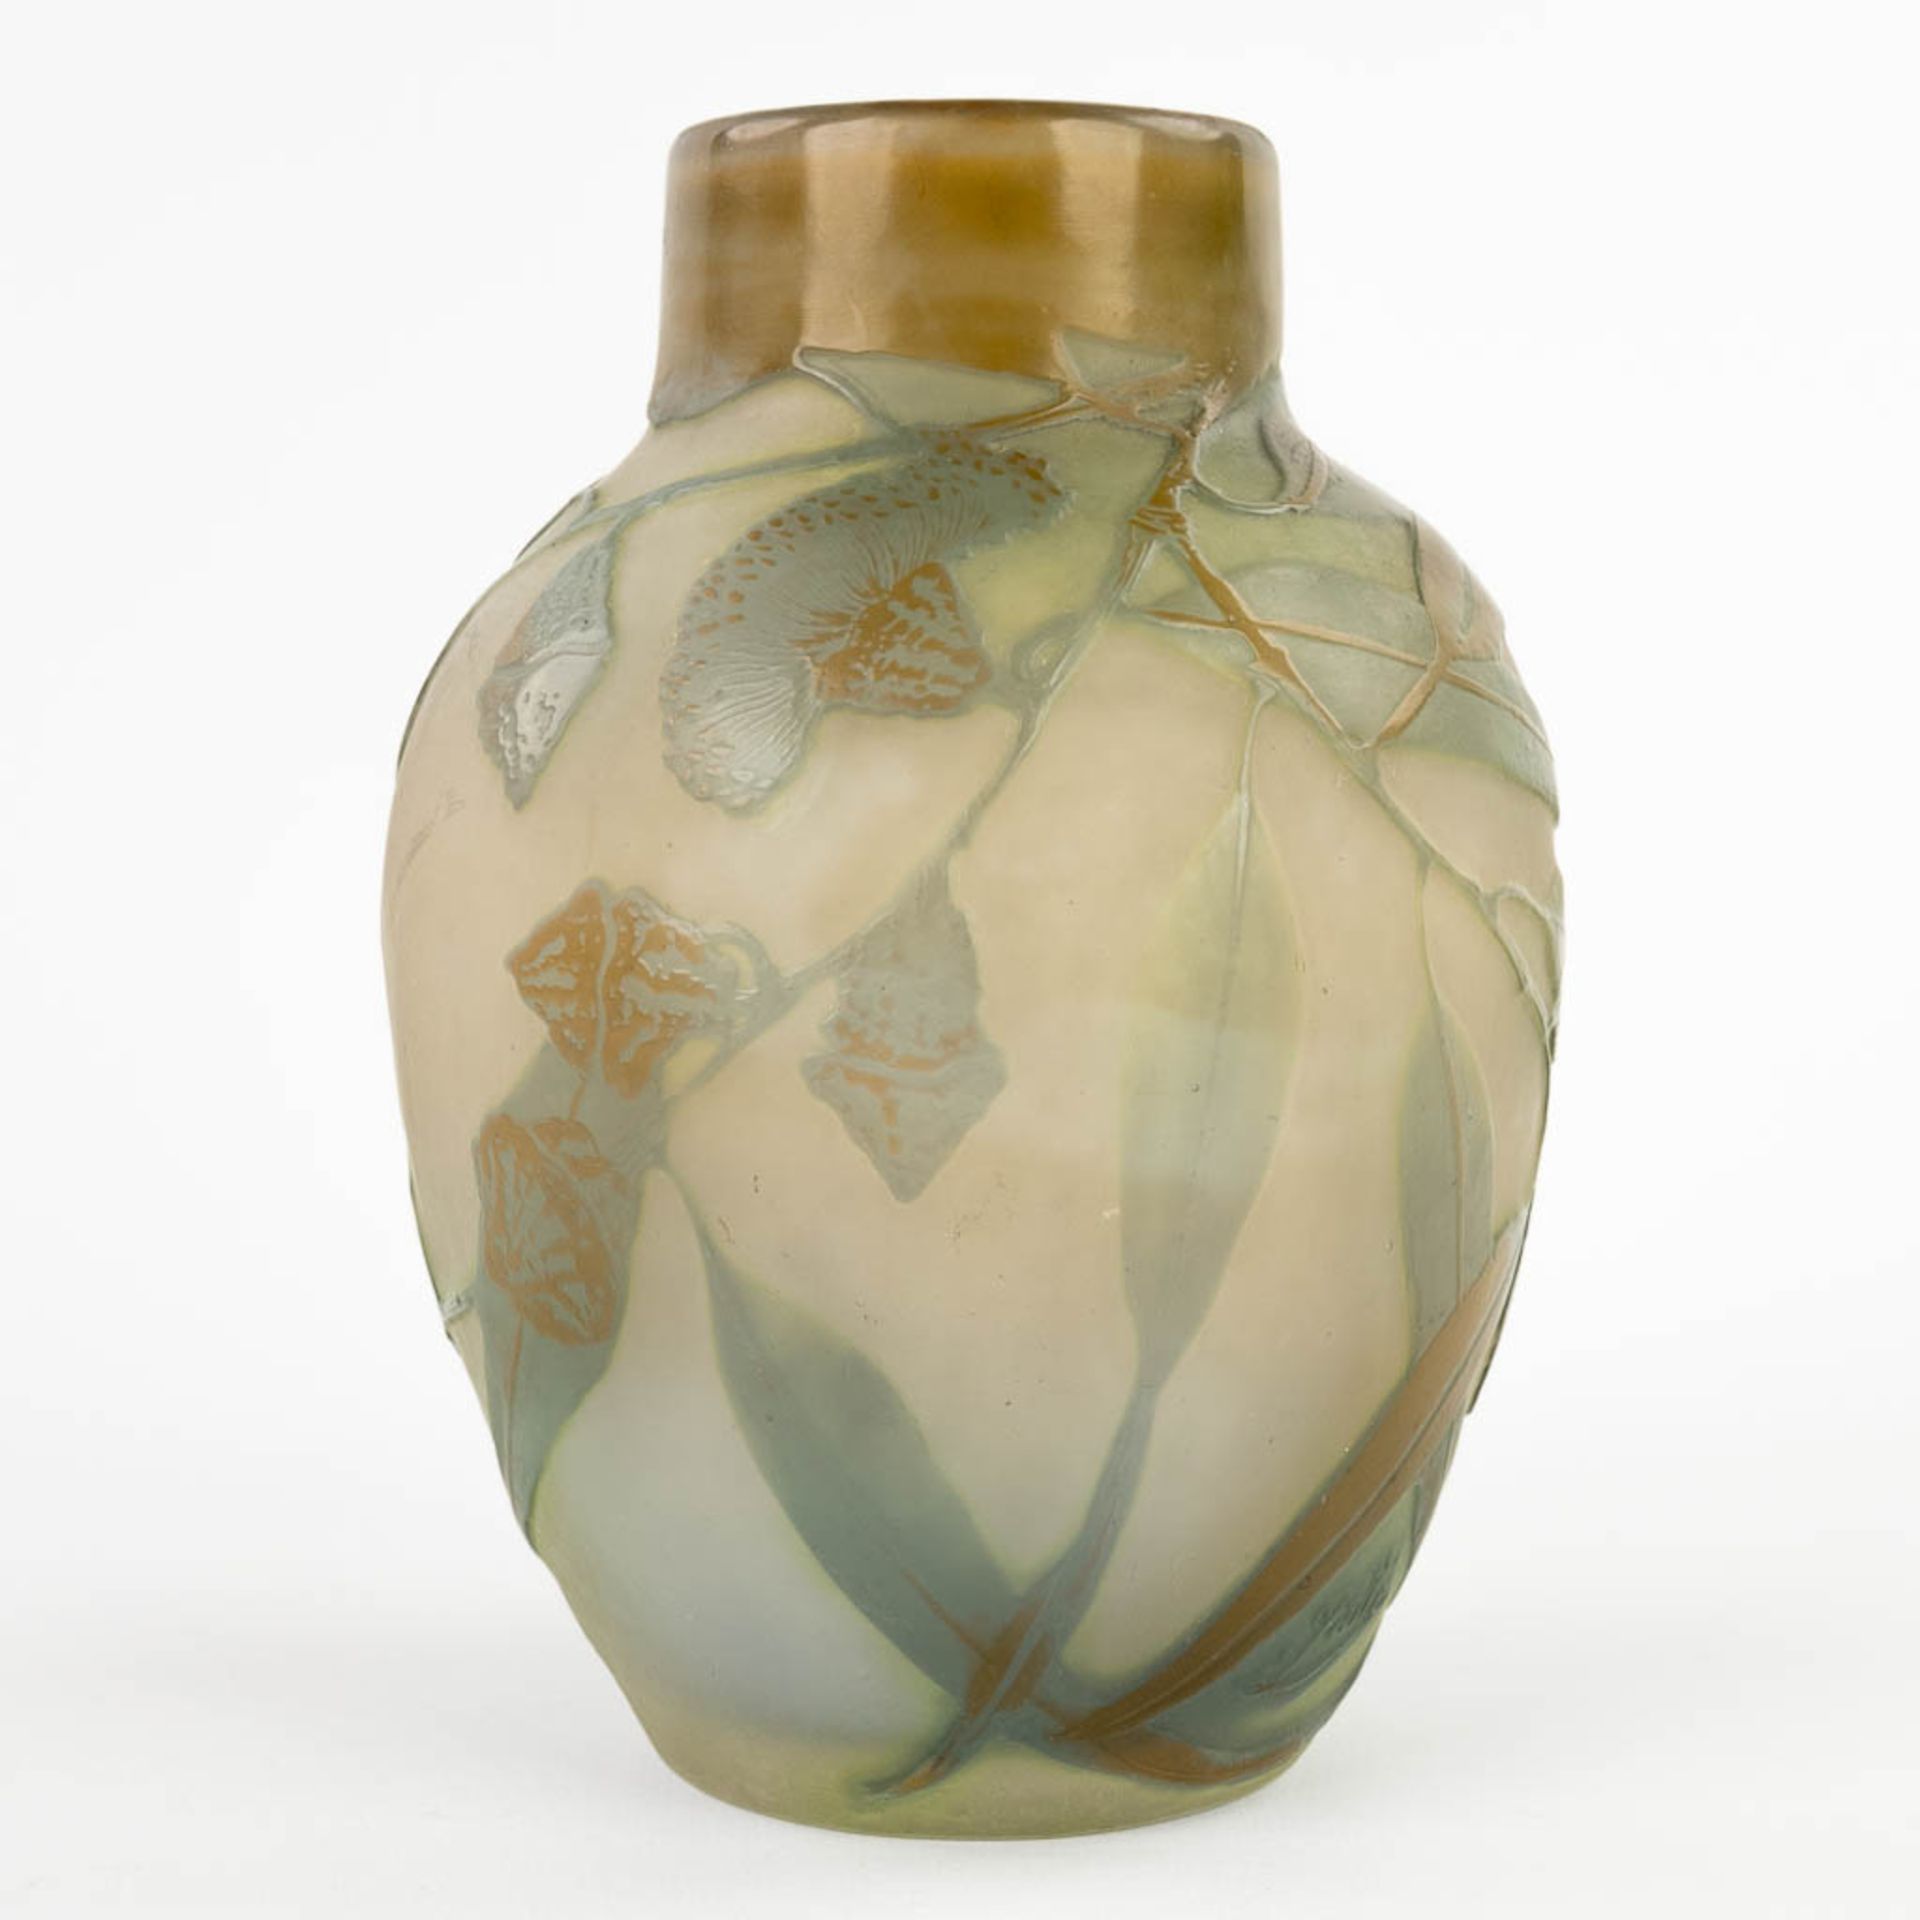 Emile GALLE (1846-1904) 'Vase' pate de verre glass. Circa 1905-1908. (H:18 x D:13 cm) - Bild 3 aus 10